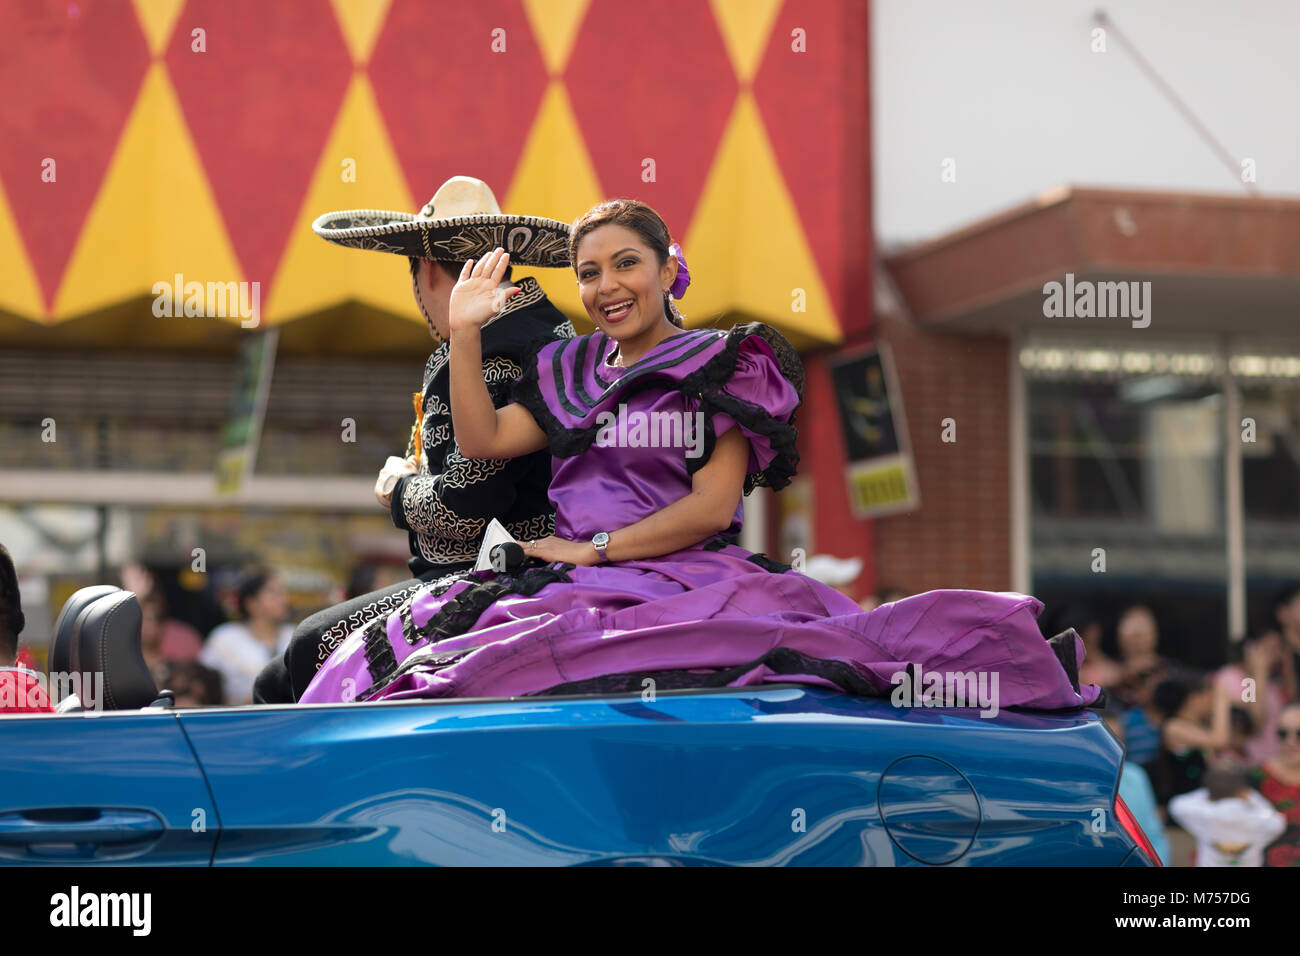 Brownsville, Texas, USA - Le 24 février 2018, Grand Parade internationale fait partie du Charro Jours Fiesta - Fiestas Mexicanas, un festival national Banque D'Images